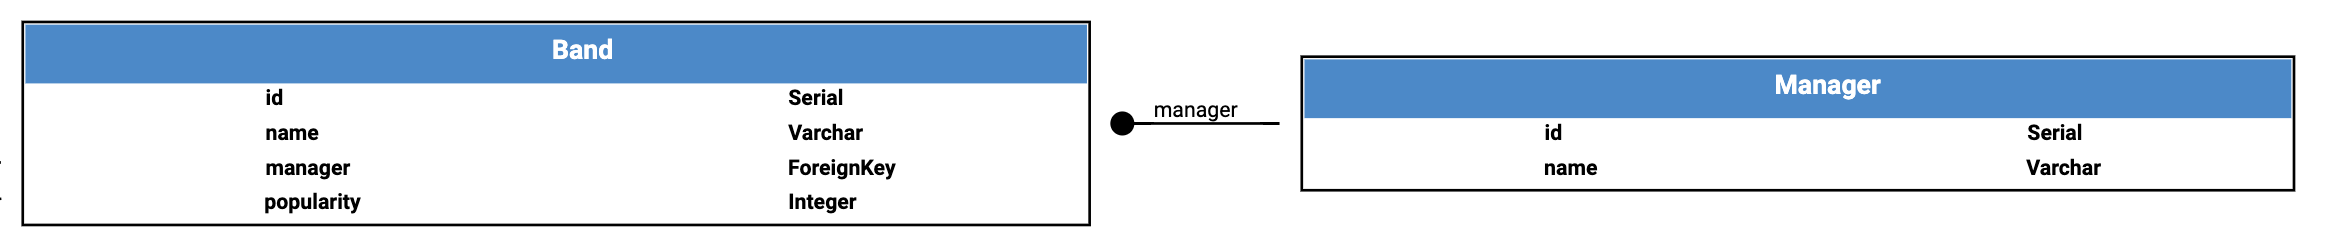 Example database schema